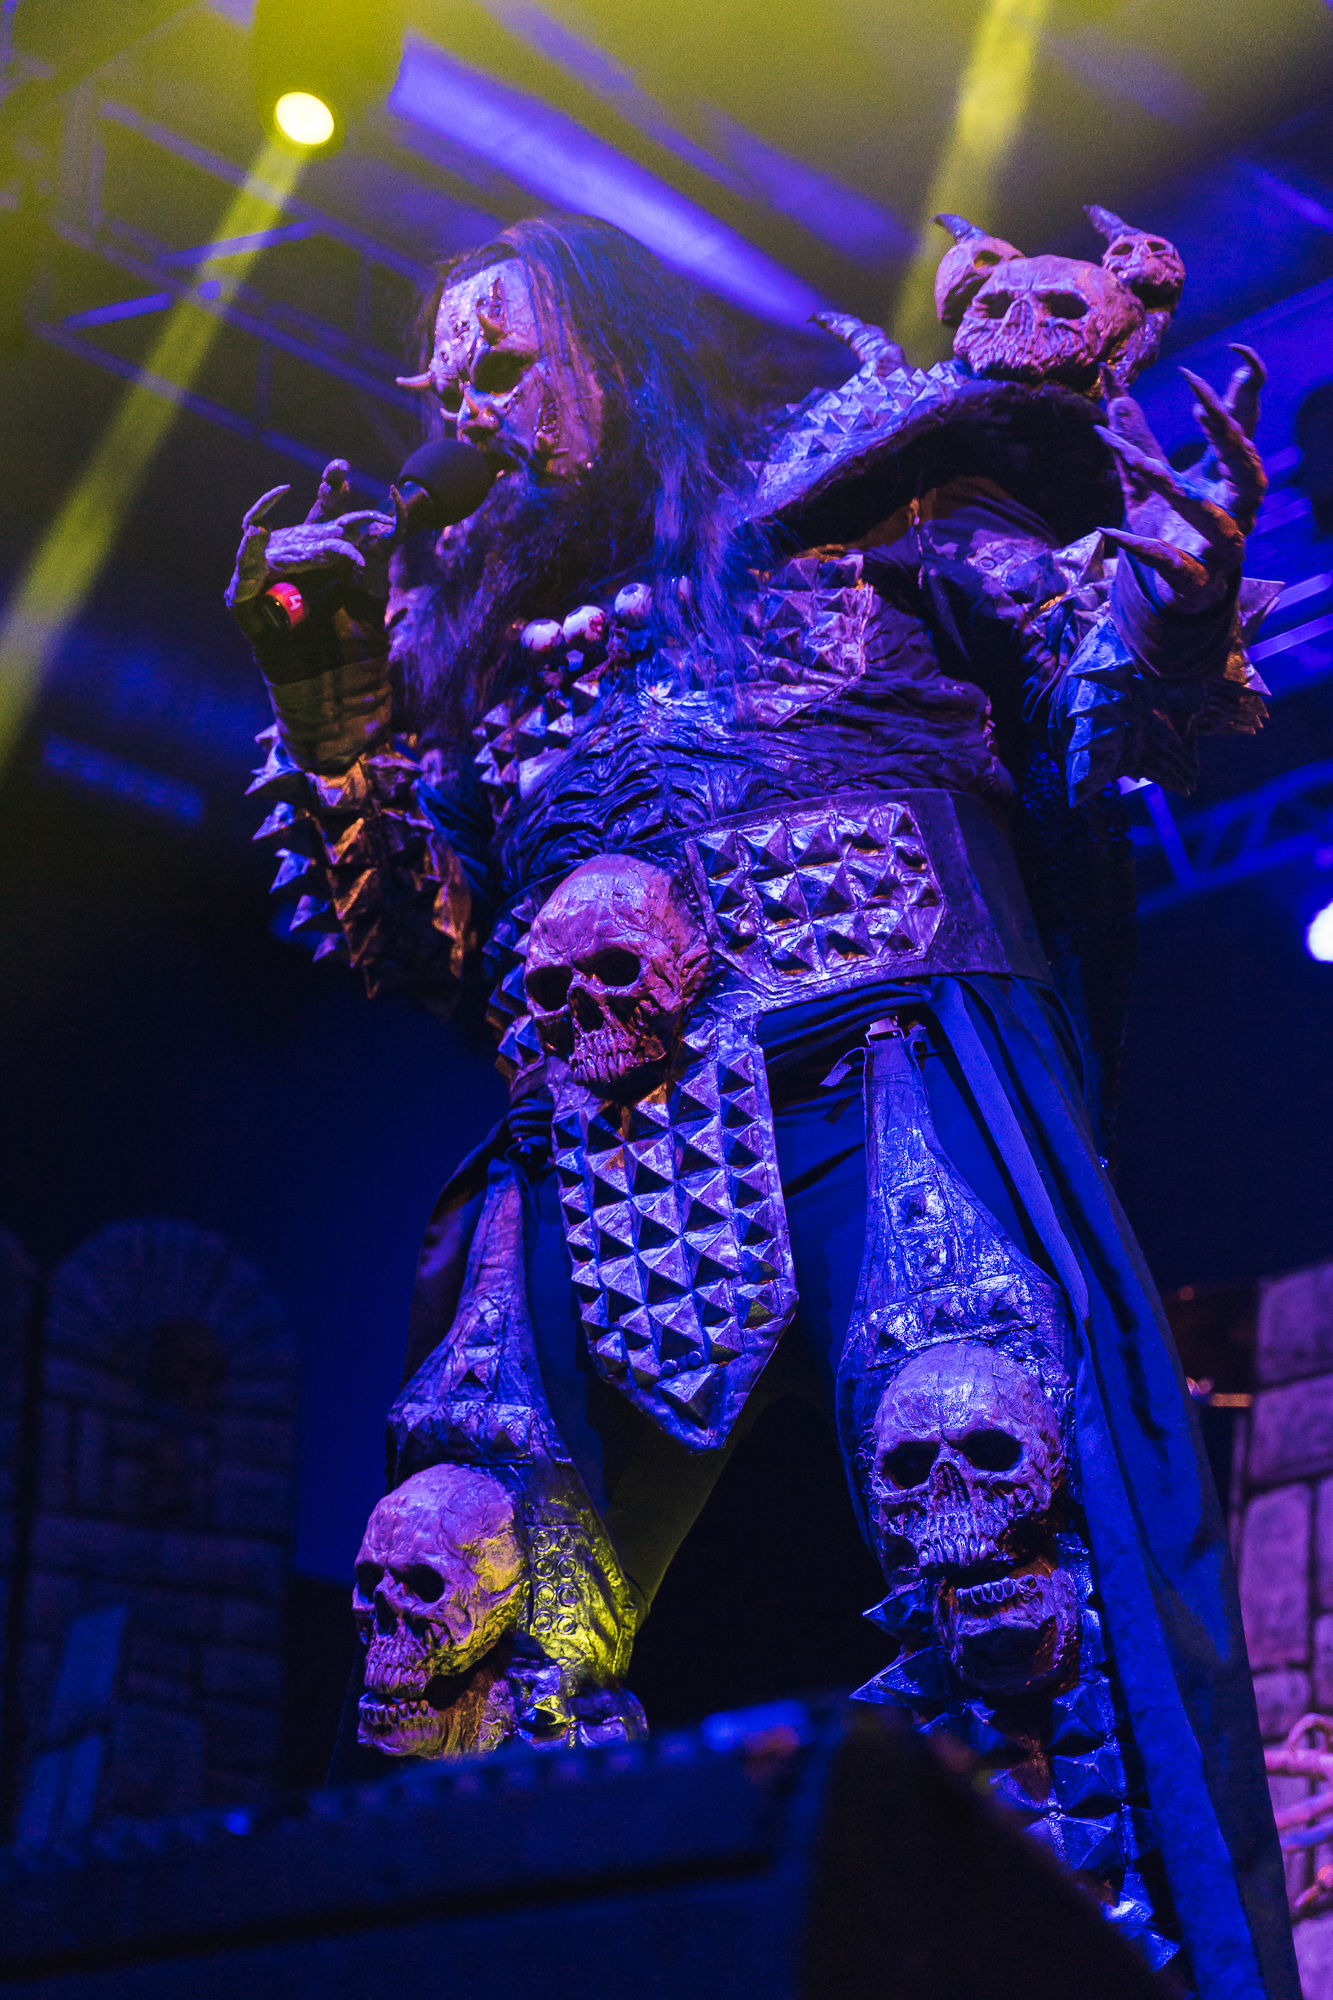 Lordi performing at Sala Santana 27 in Bilbao, Spain.